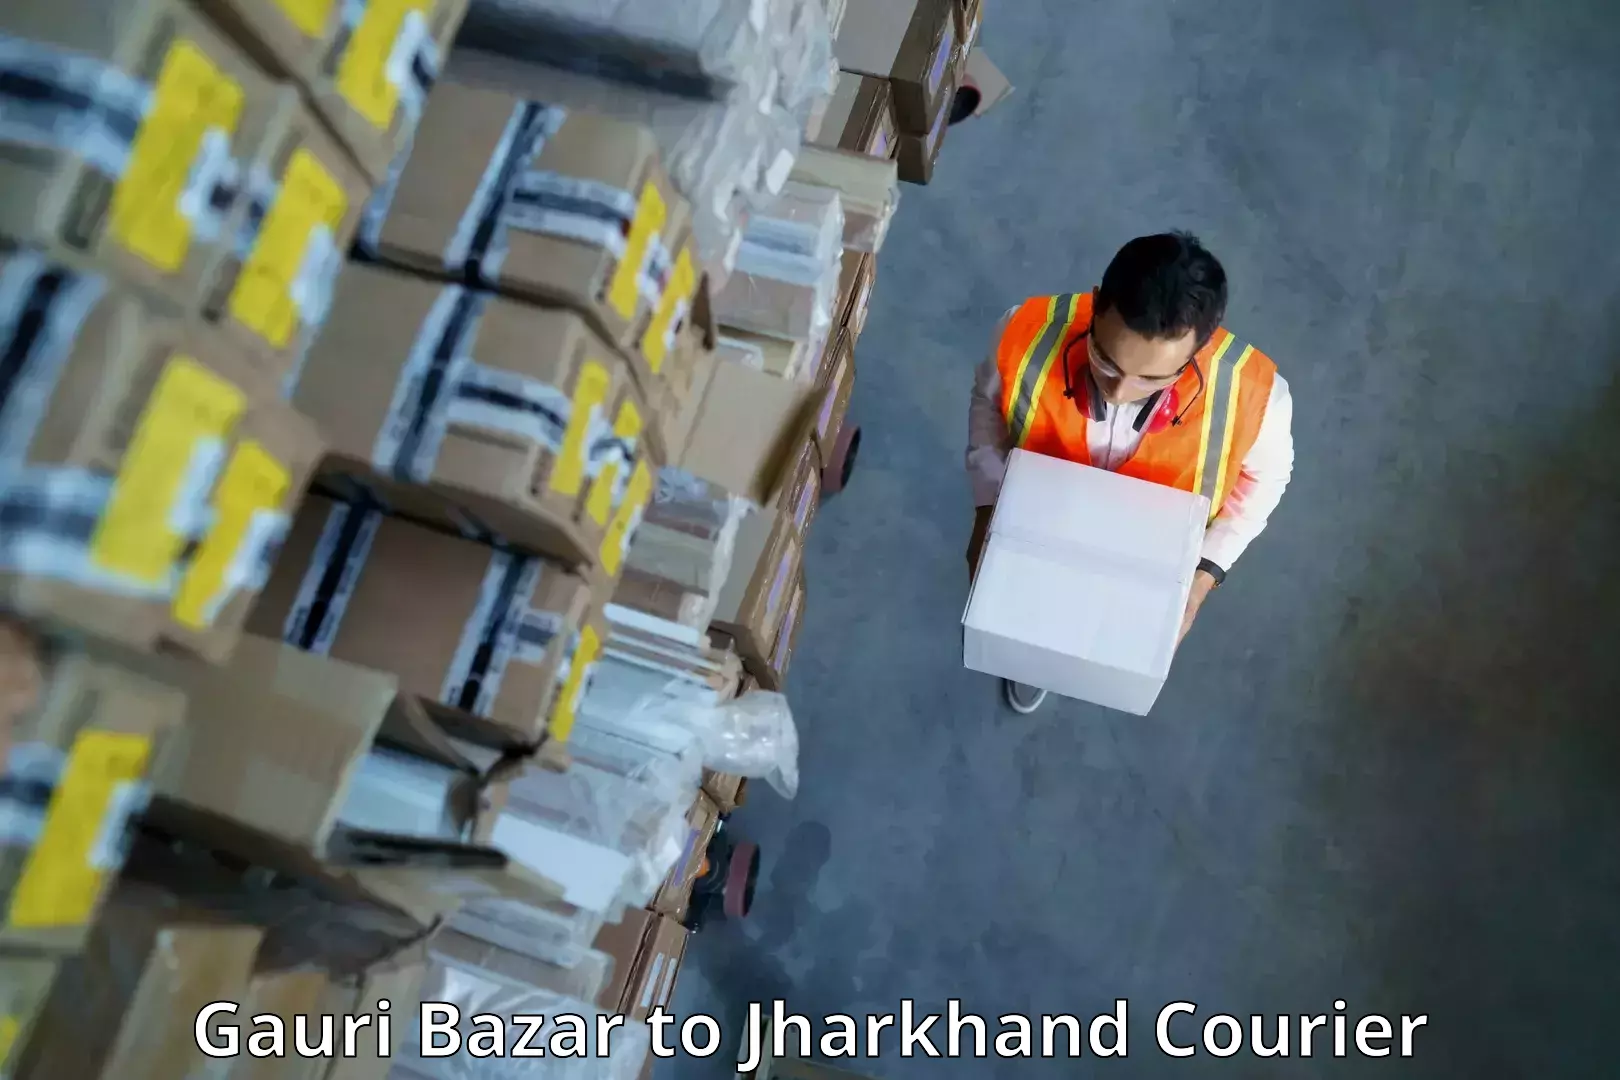 User-friendly delivery service Gauri Bazar to Jagannathpur